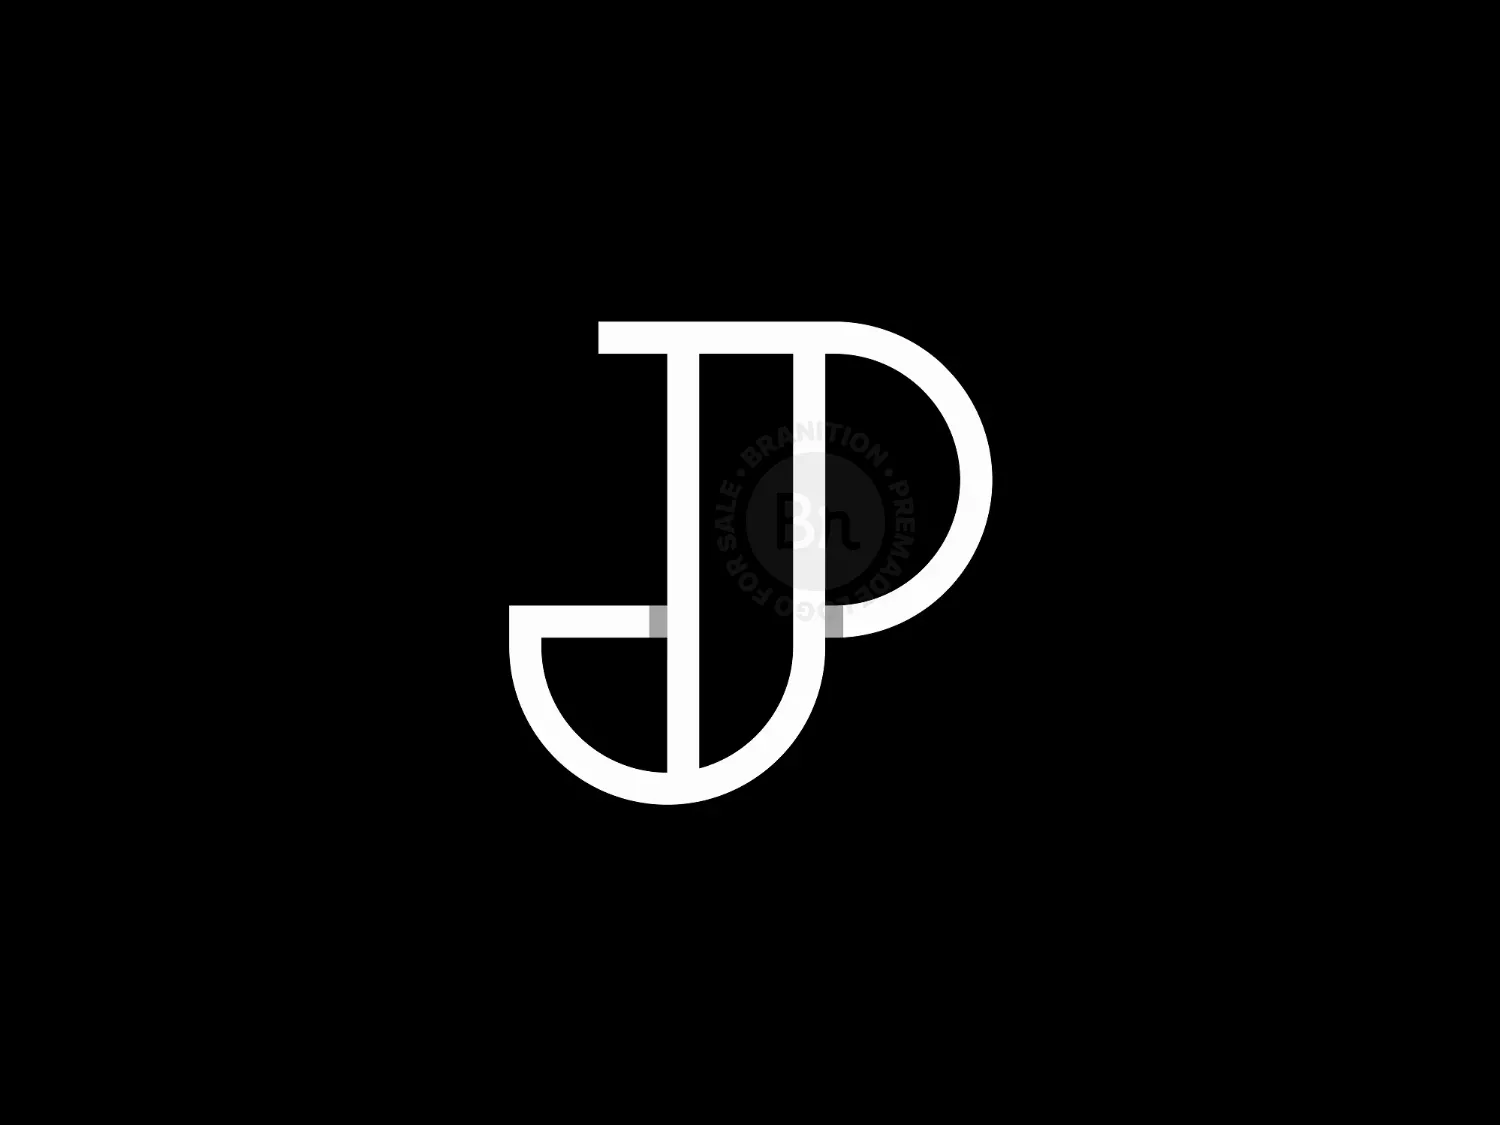 PJ logo design vector template | Branding & Logo Templates ~ Creative Market